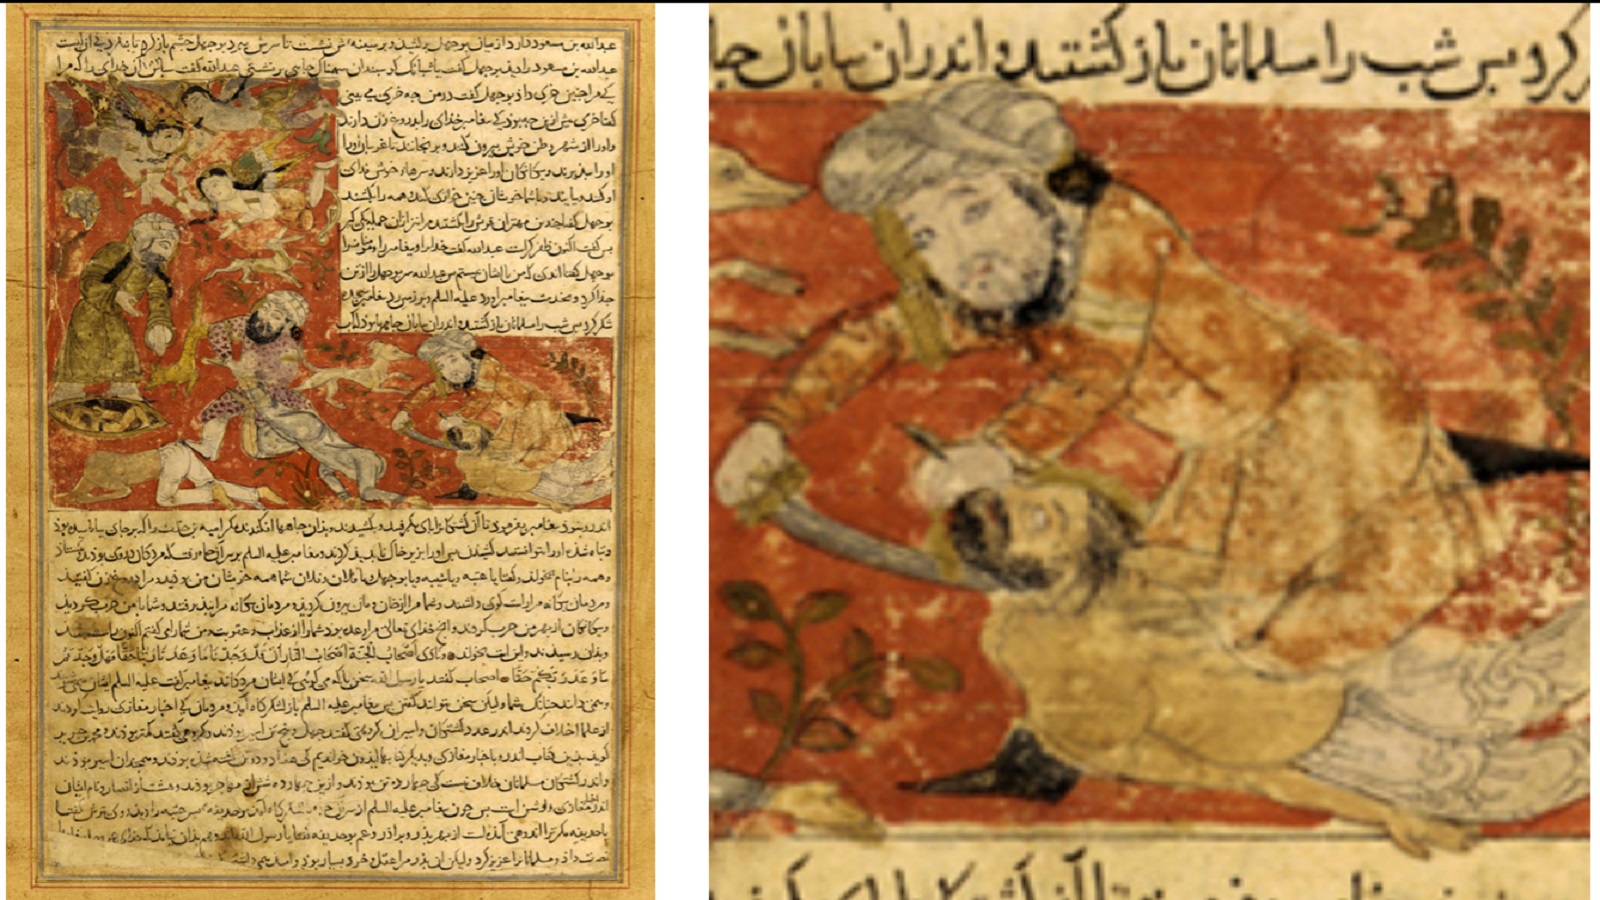 مقتل ابي جهل في غزوة بدر، "تاريخ بلعمي"، مخطوط مصدره العراق على الأرجح، فرير غاليري، واشنطن.